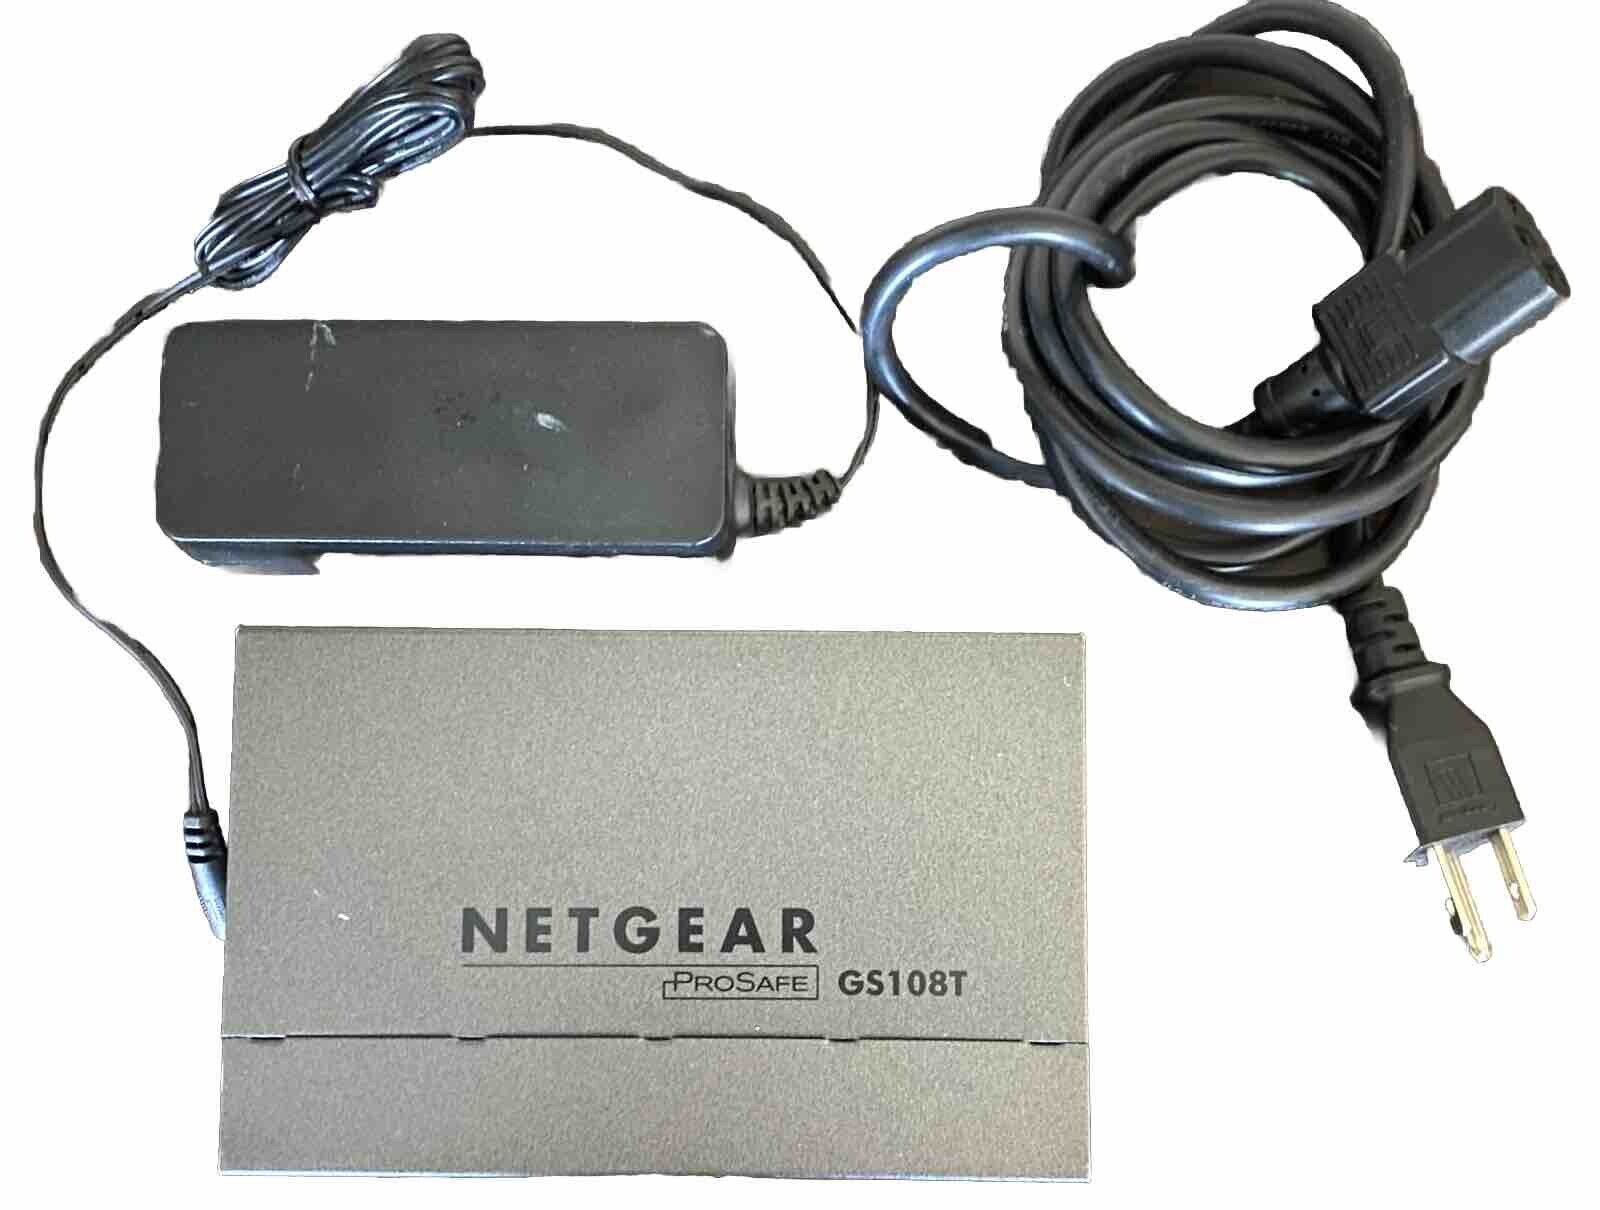 NETGEAR ProSafe 8-port GS108T Gigabit Ethernet Smart Switch w/ Cloud Management